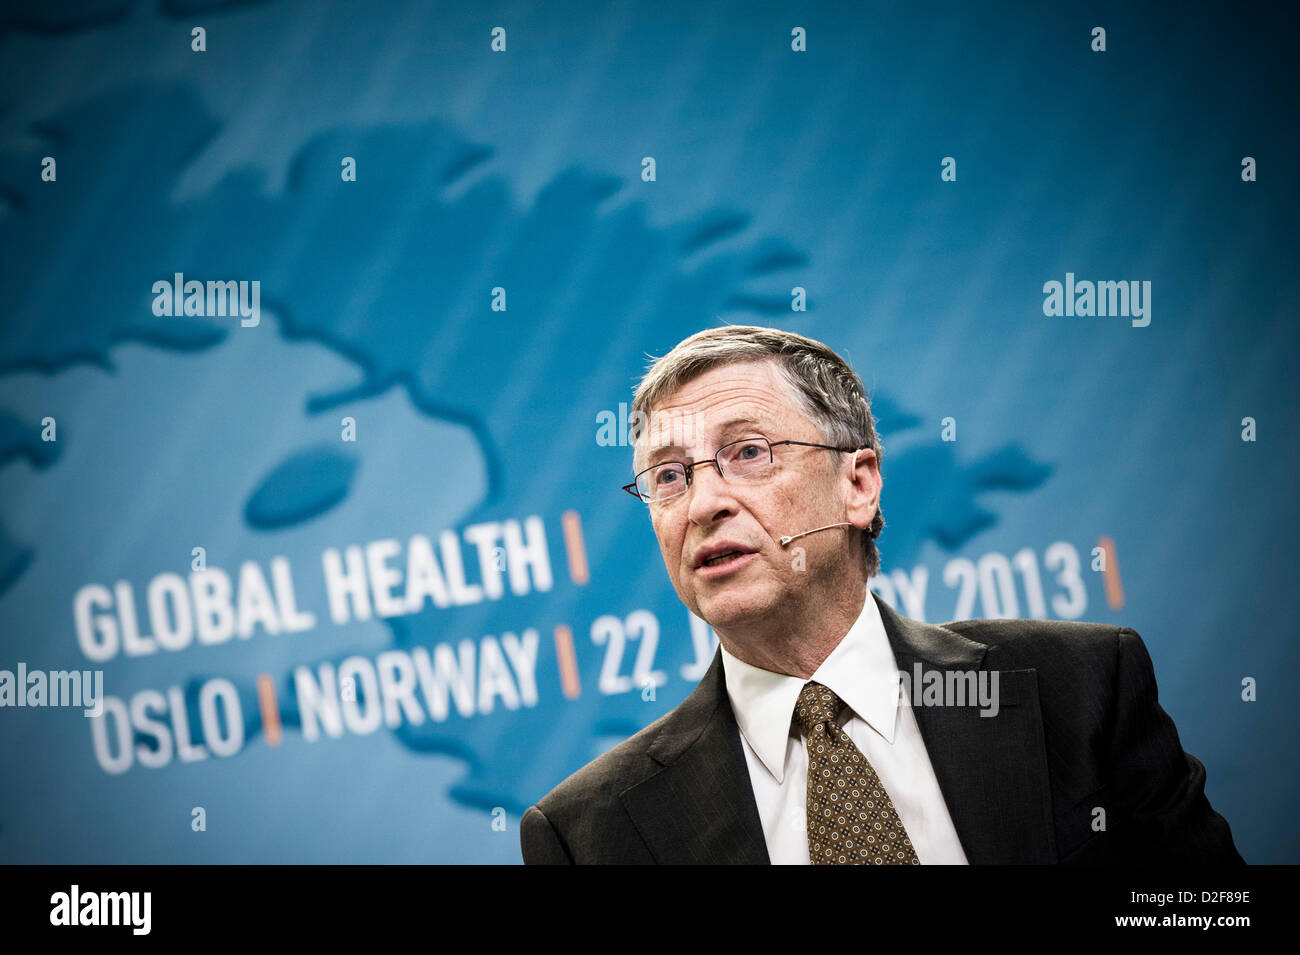 Oslo, Norvège. 22 janvier 2013. Bill Gates au cours de discussion sur la santé internationale avec PM norvégien Jens Stoltenberg au Musée Astrup Fearnley à Oslo. Banque D'Images